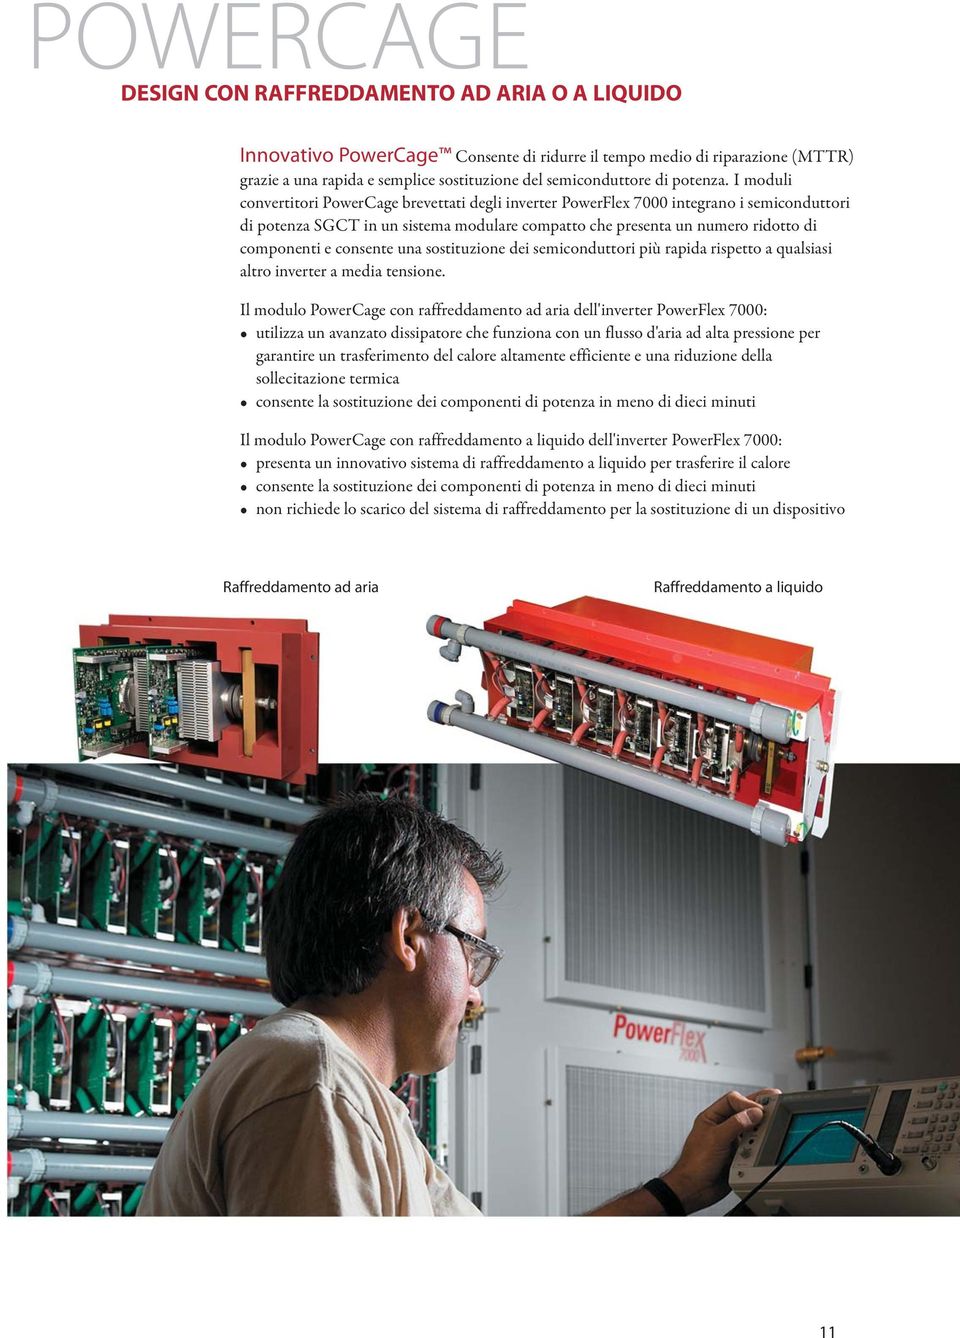 I moduli convertitori PowerCage brevettati degli inverter PowerFlex 7000 integrano i semiconduttori di potenza SGCT in un sistema modulare compatto che presenta un numero ridotto di componenti e